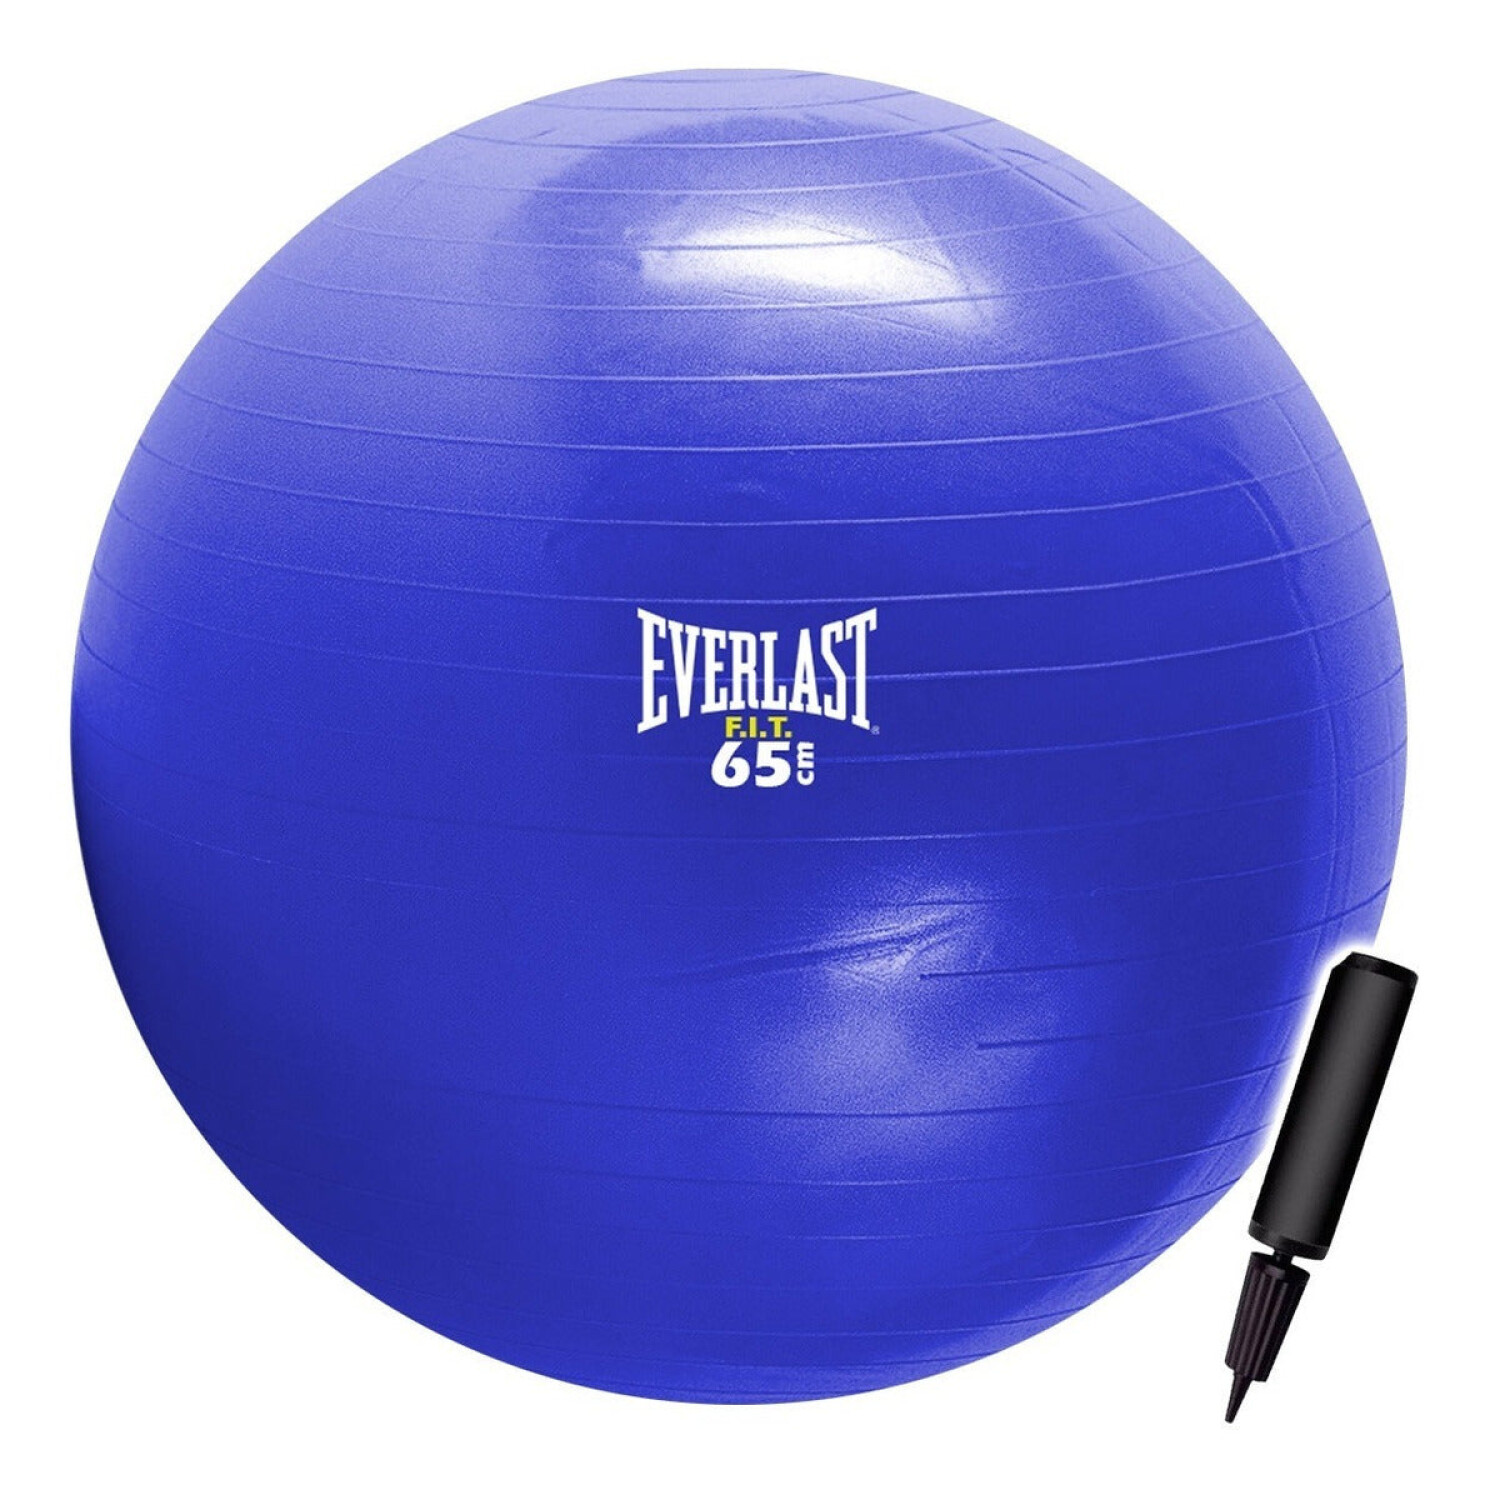 Pelota Balón Yoga Pilates 85cm+ 1 Inflador